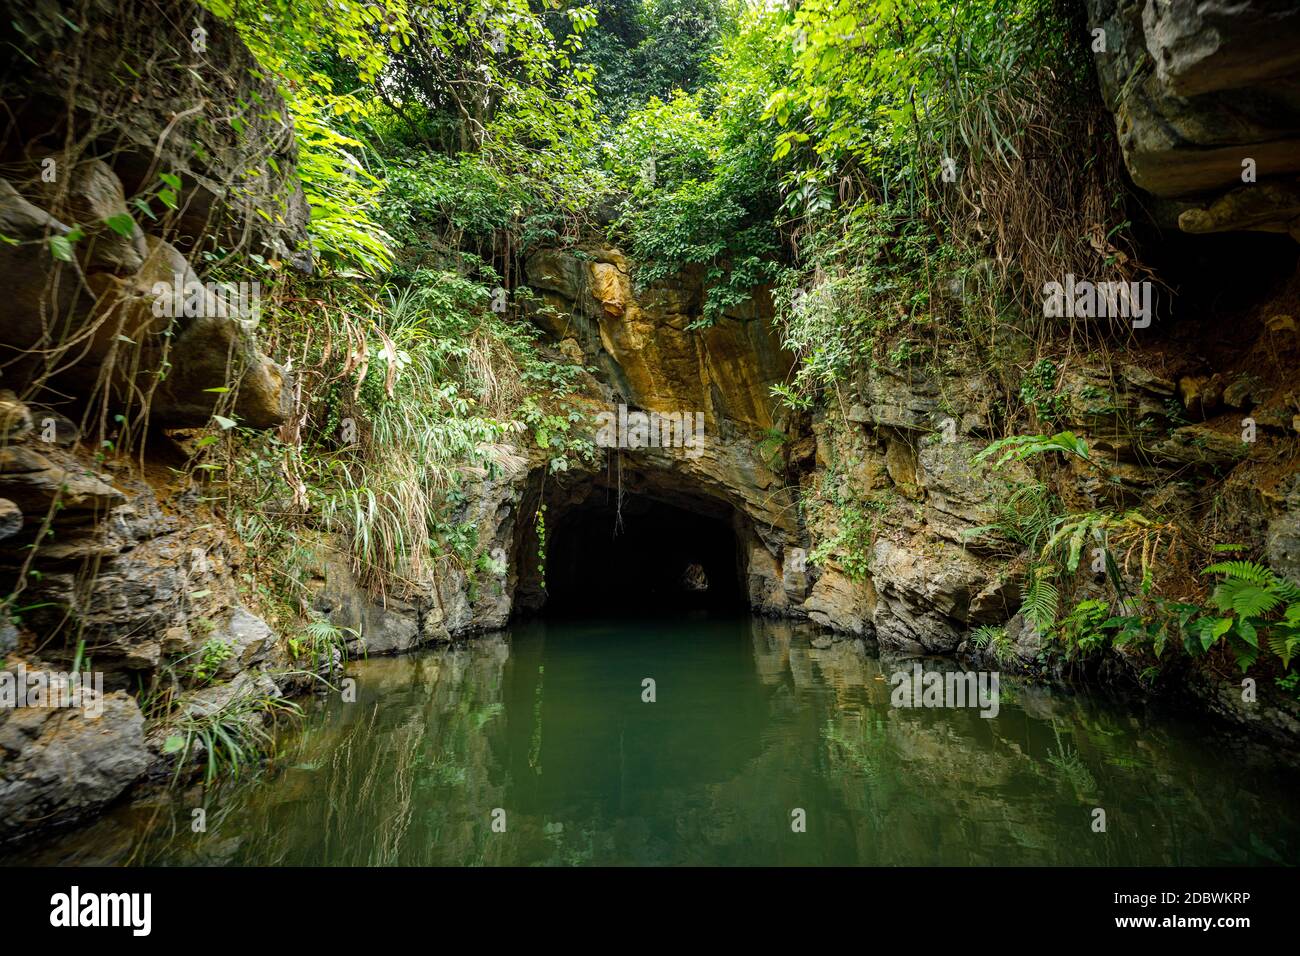 El paisaje de Ninh Binh con las cuevas de Tam Coc y Trang An Foto de stock